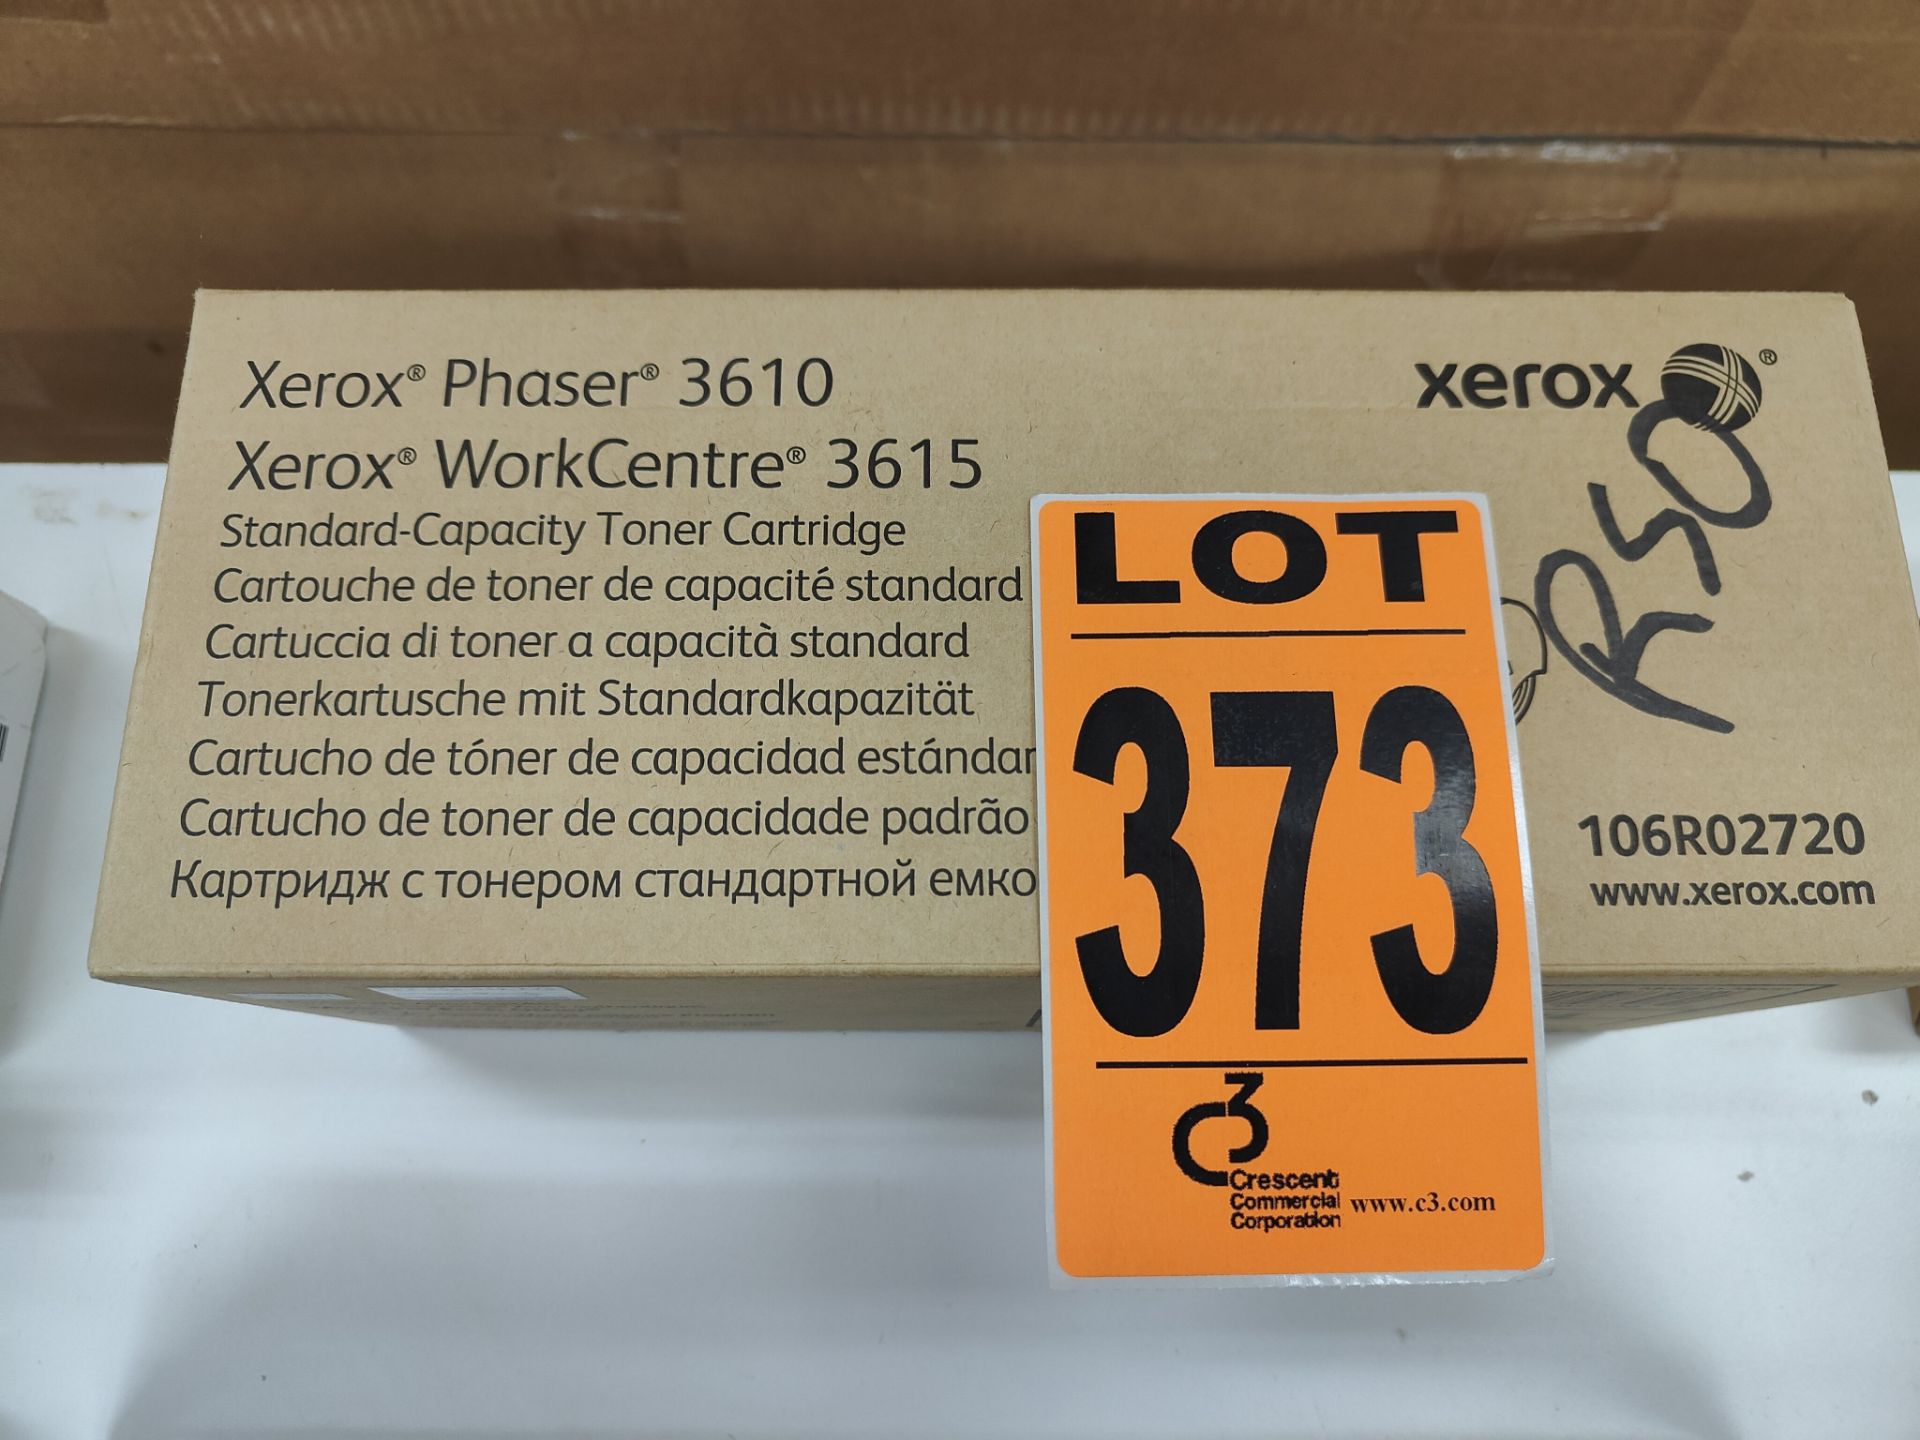 XEROX Phaser 3610 Toner